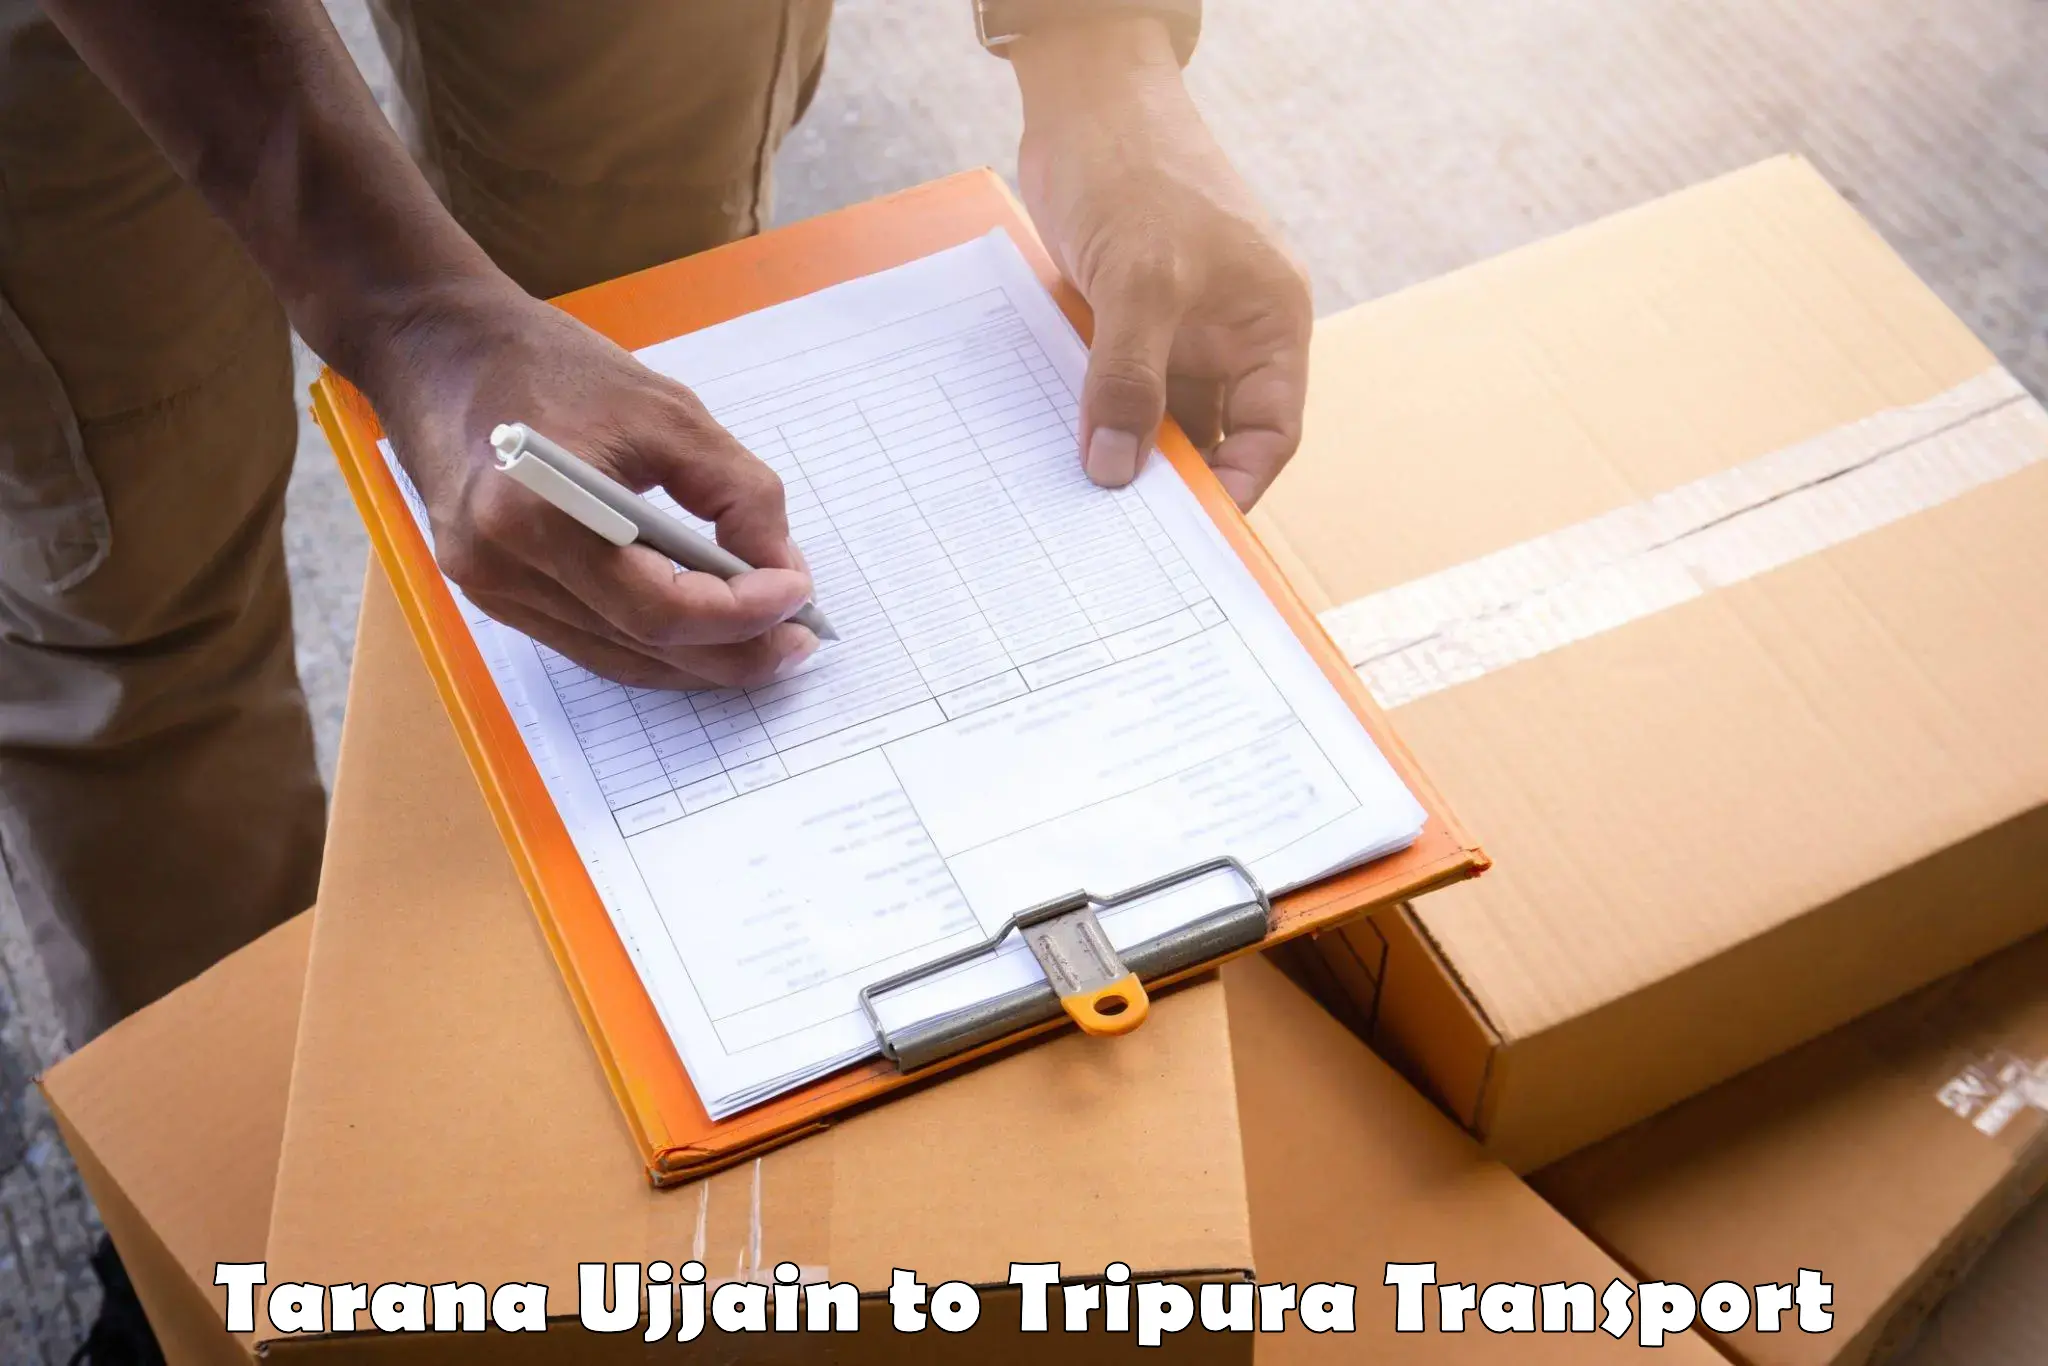 Sending bike to another city Tarana Ujjain to Tripura